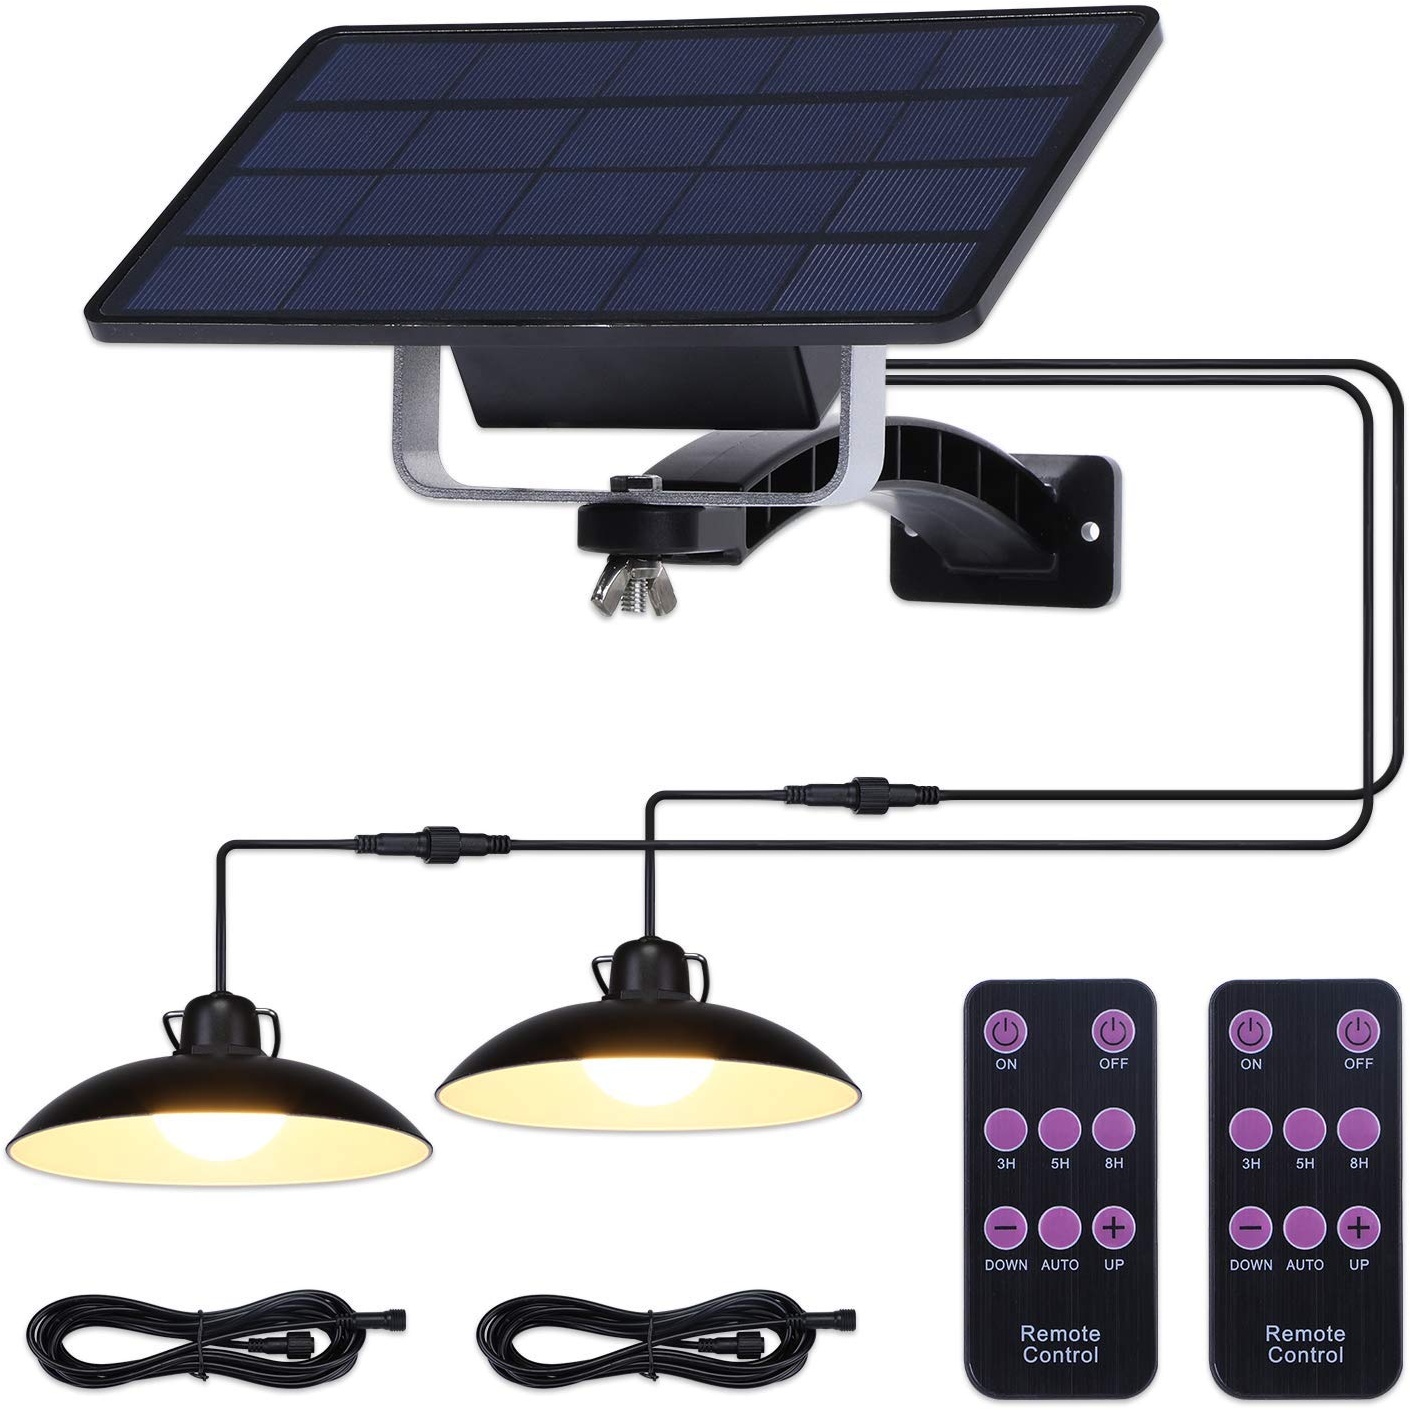 ENCOFT Solar Hängelampen für Außen, LED Solarlampen für Außen Hängend mit Fernbedienung IP65 Wasserdichte 4W Solarleuchten für Garten Bauernhaus Camping mit 3M Kabel (2 Licht,Warmweiß)